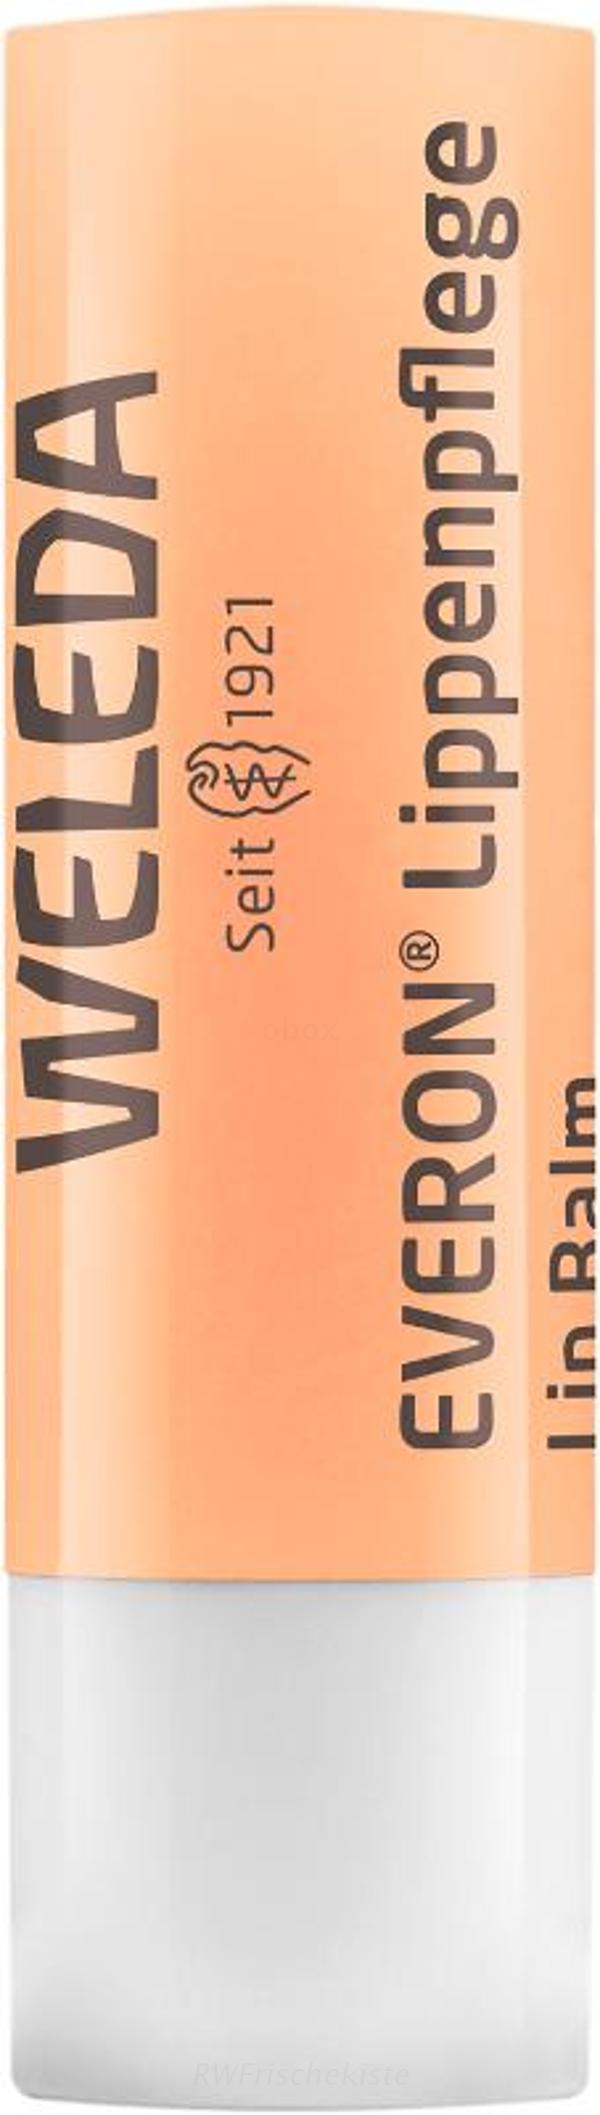 Produktfoto zu Everon Lippenpflege (Blister)